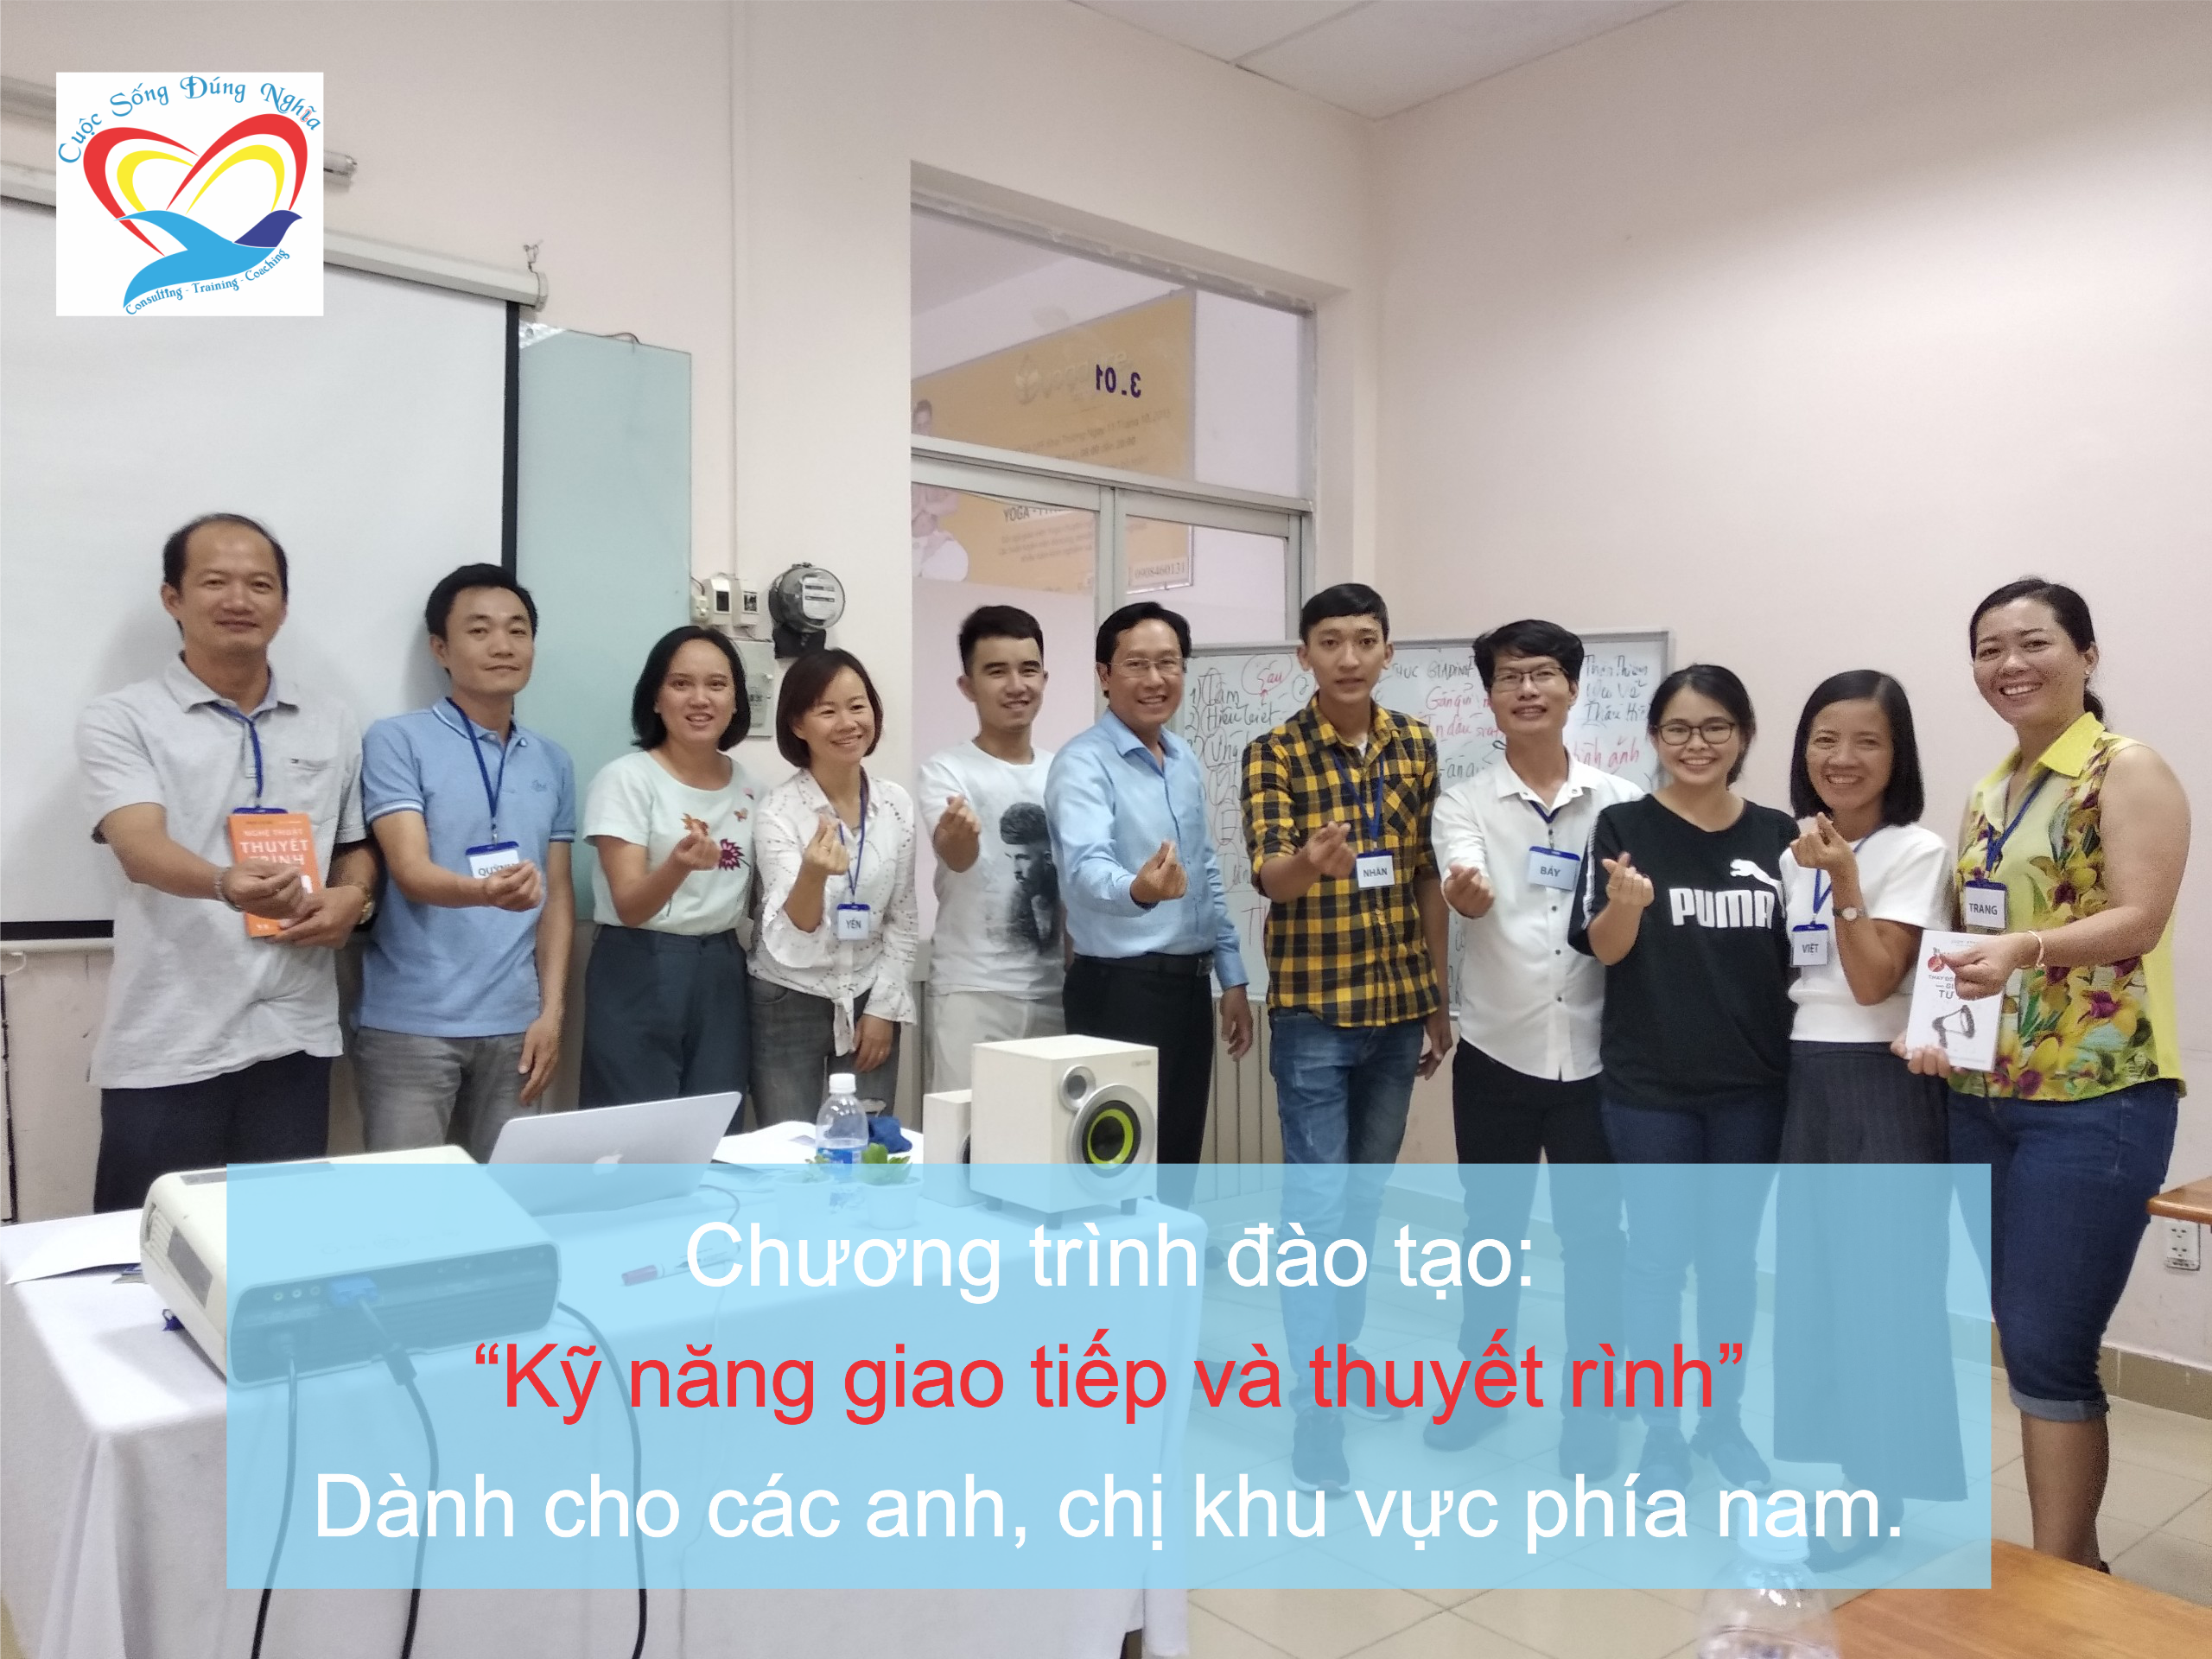 Đào tạo public: “Kỹ Năng Giao Tiếp và Thuyết Trình Thuyết Phục” tại Hồ Chí Minh tháng 06 năm 2019